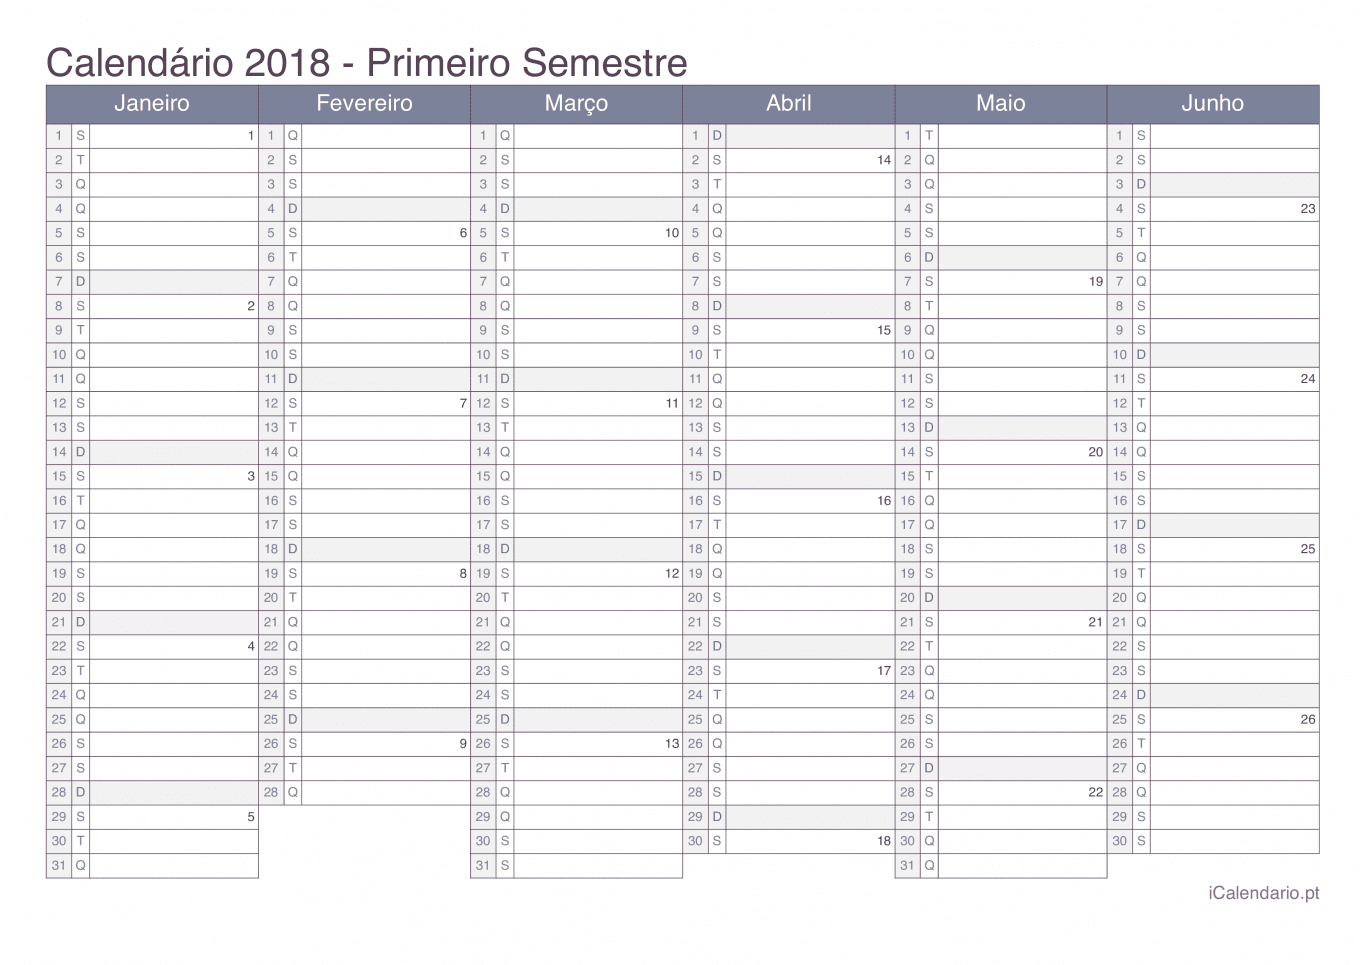 Calendário por semestre com números da semana 2018 - Office